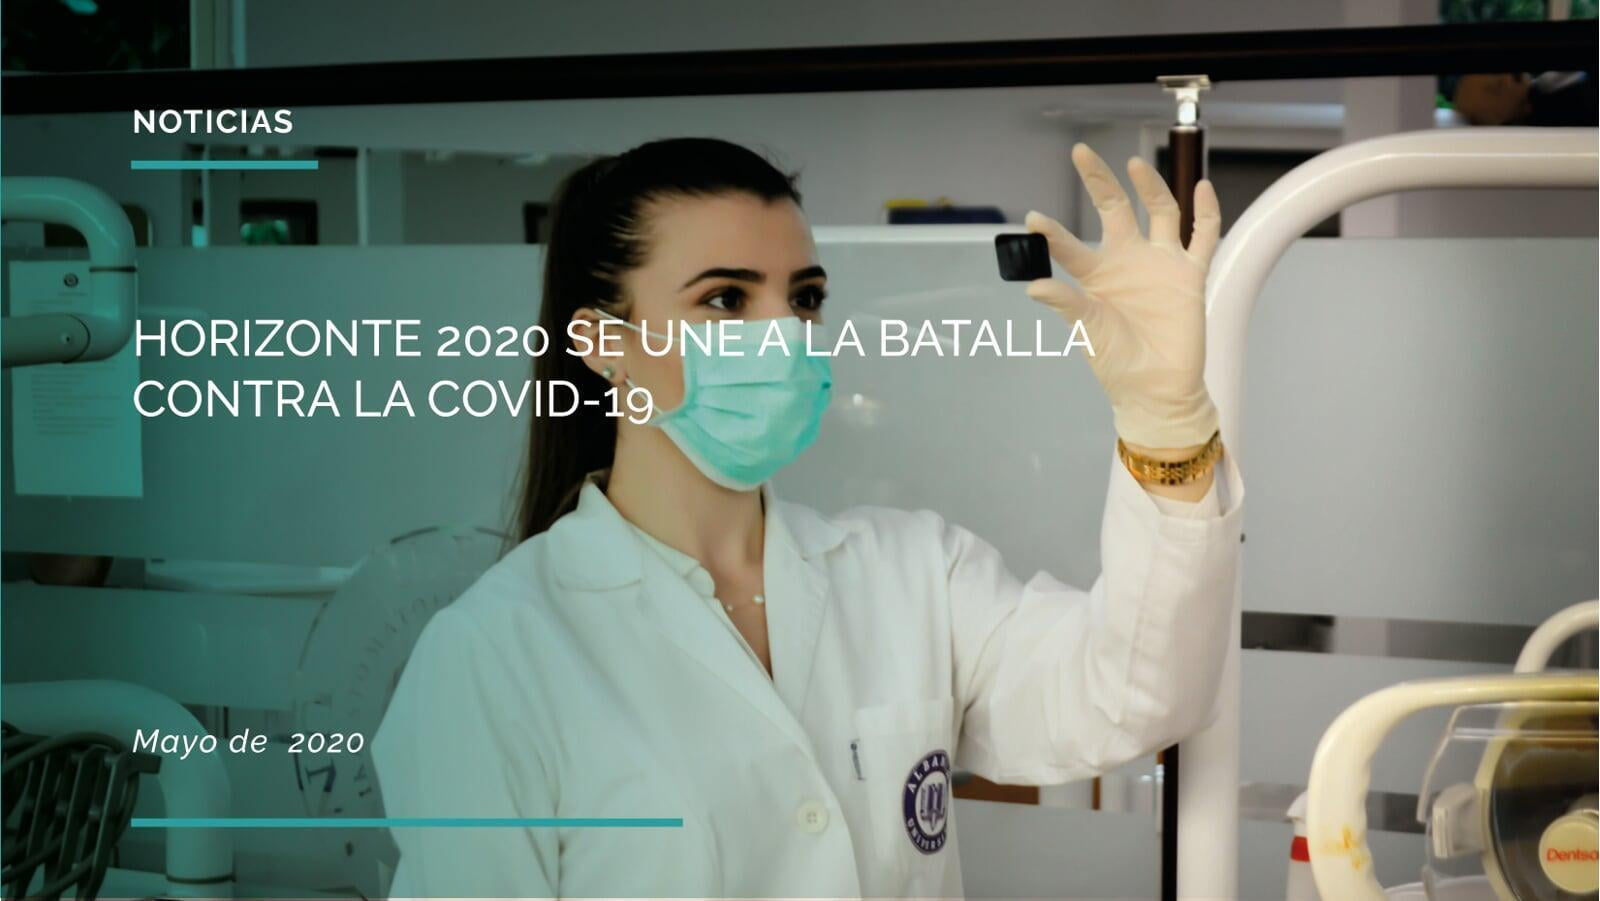 HORIZONTE 2020 SE UNE A LA BATALLA CONTRA LA COVID-19